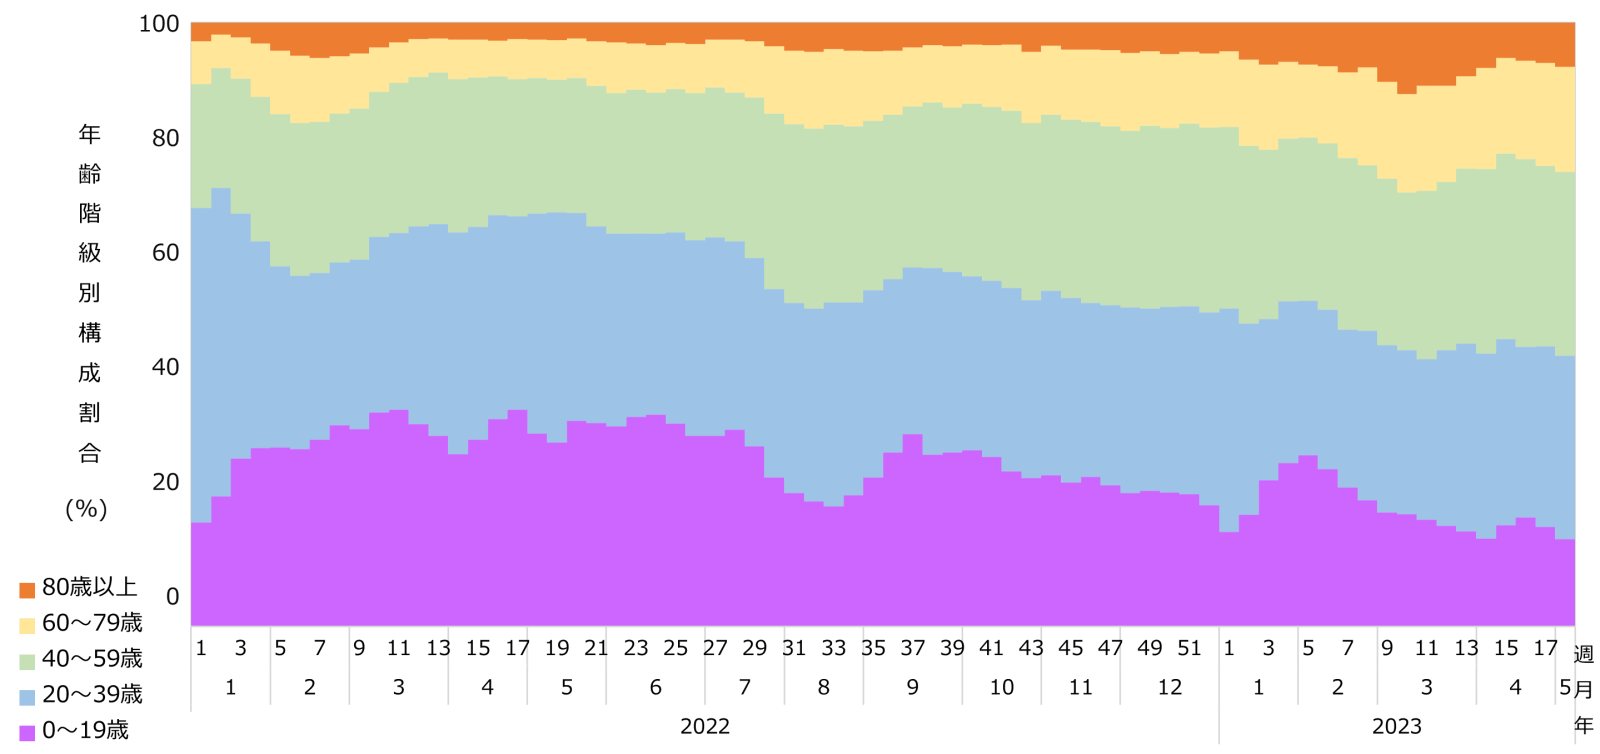 週別・年齢階級別 報告数の構成比のグラフ